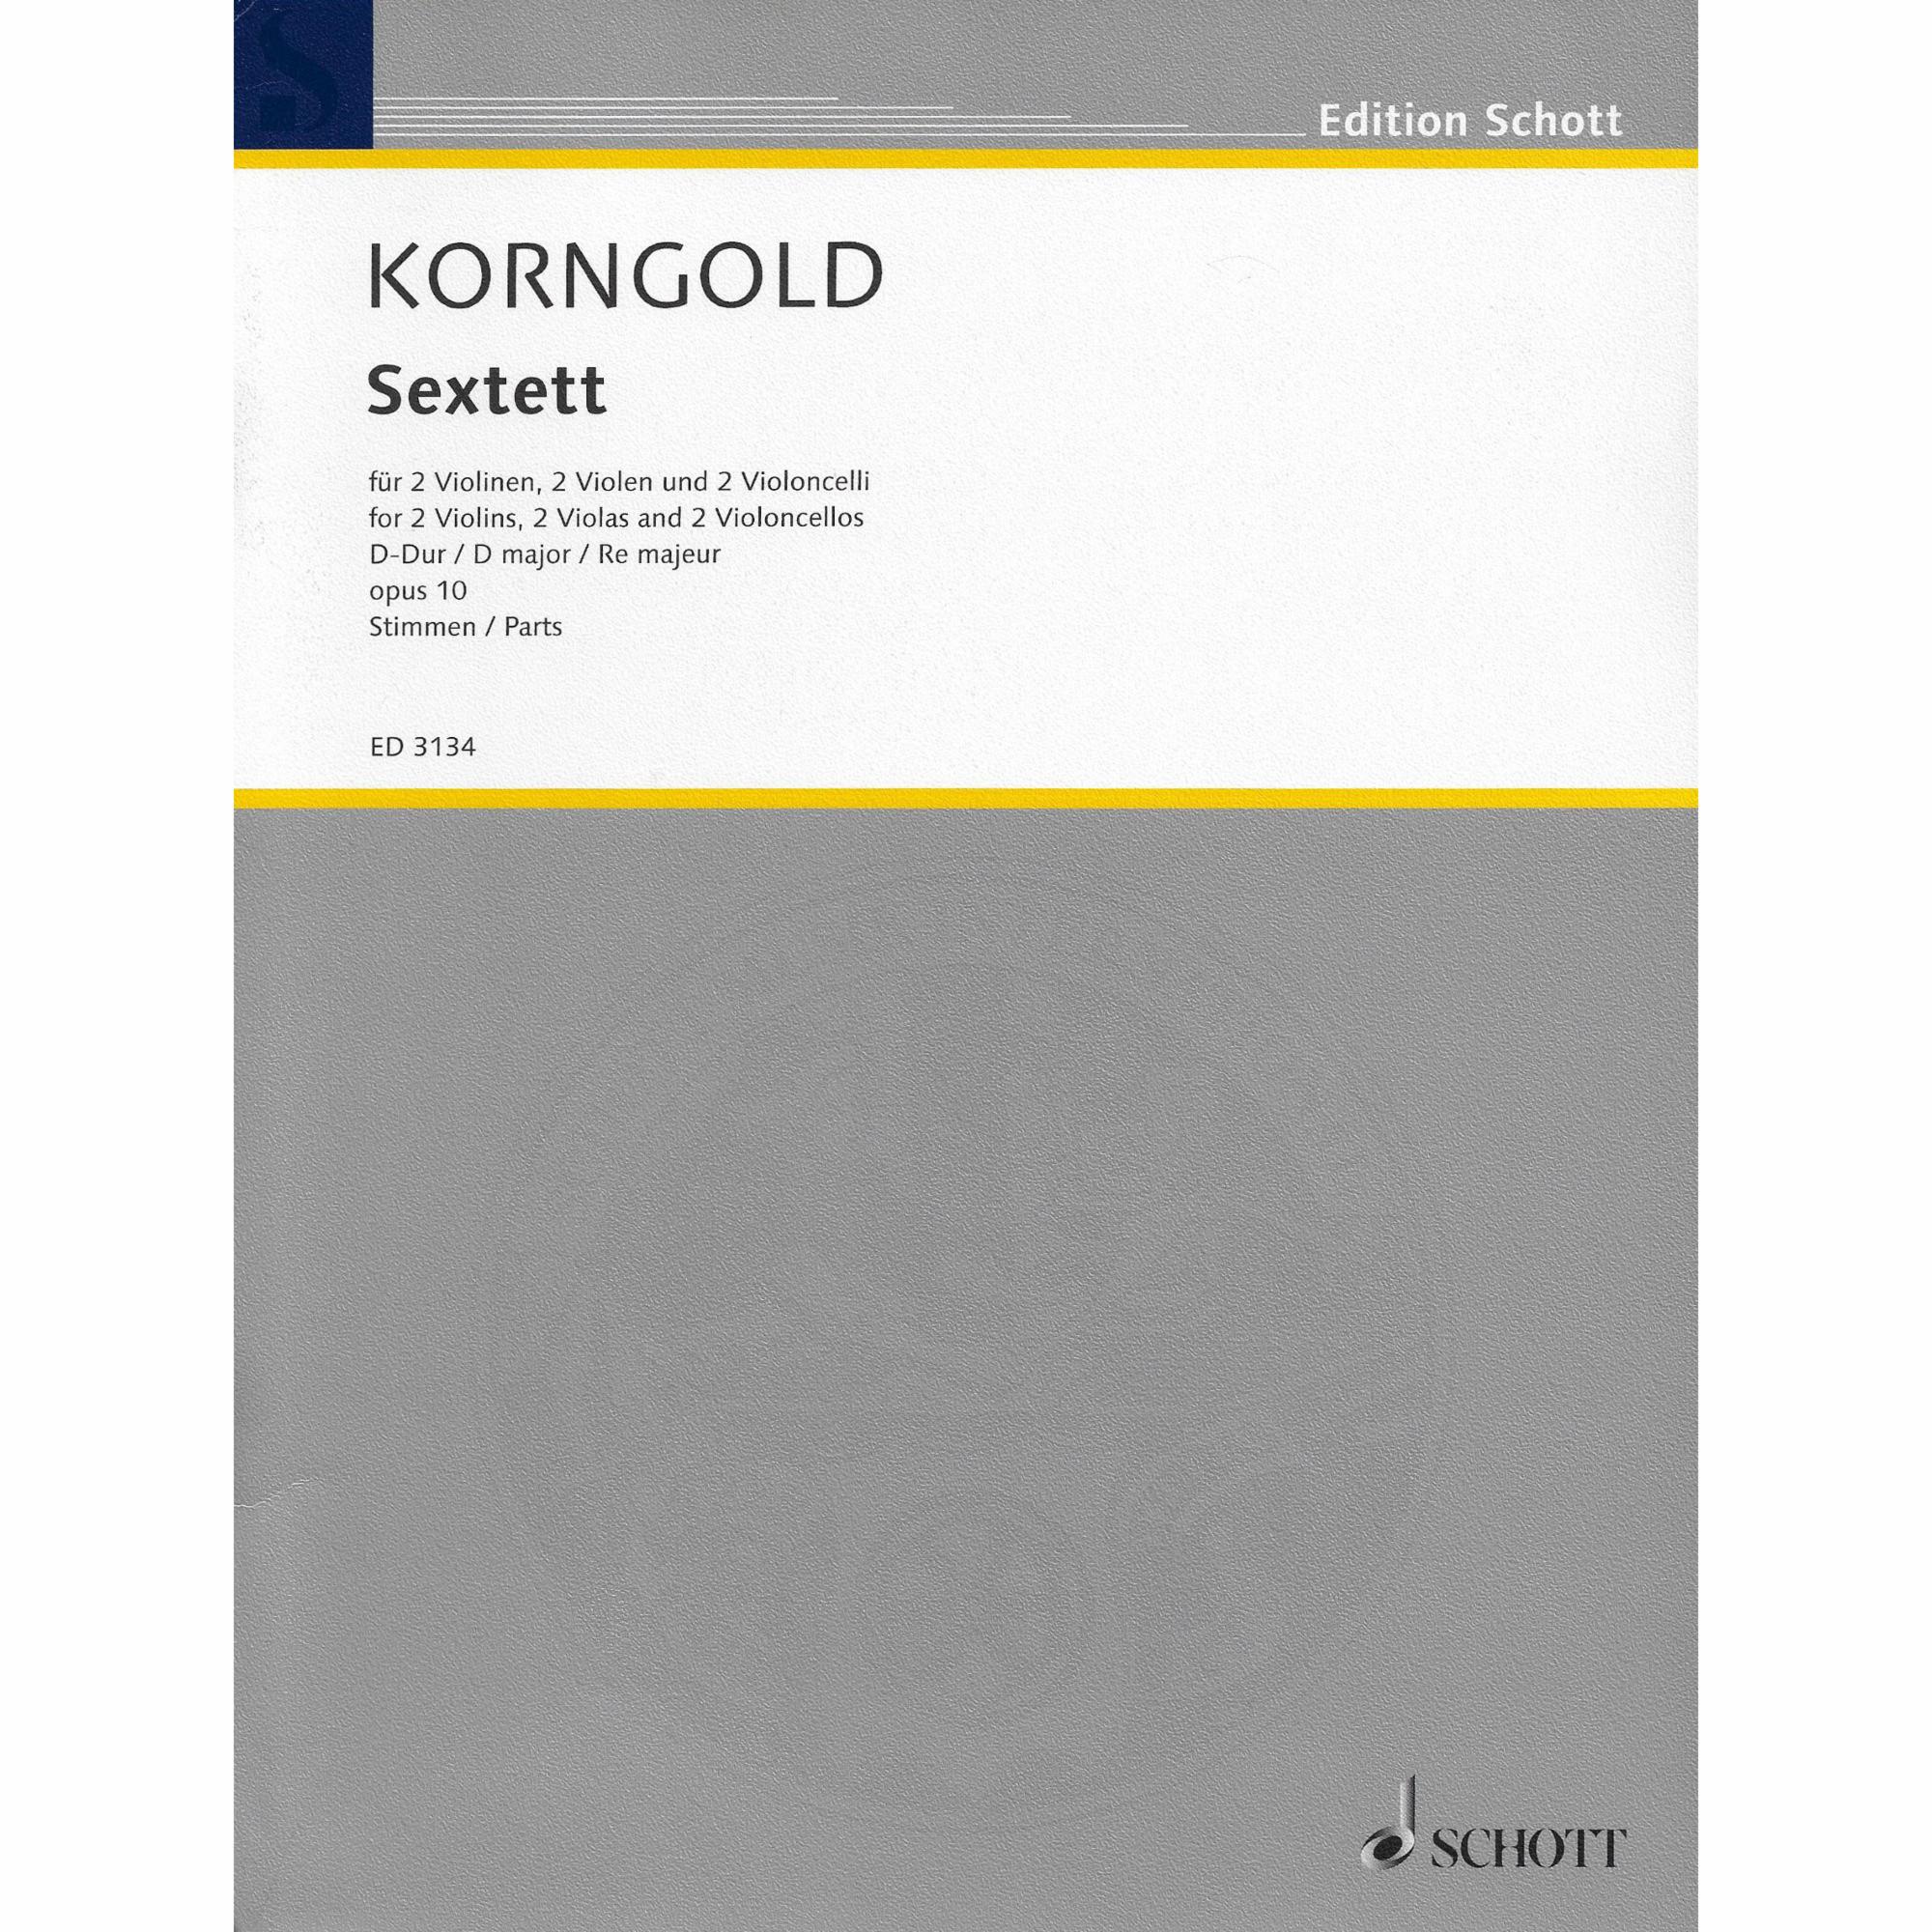 Korngold -- String Sextet in D Major, Op. 10